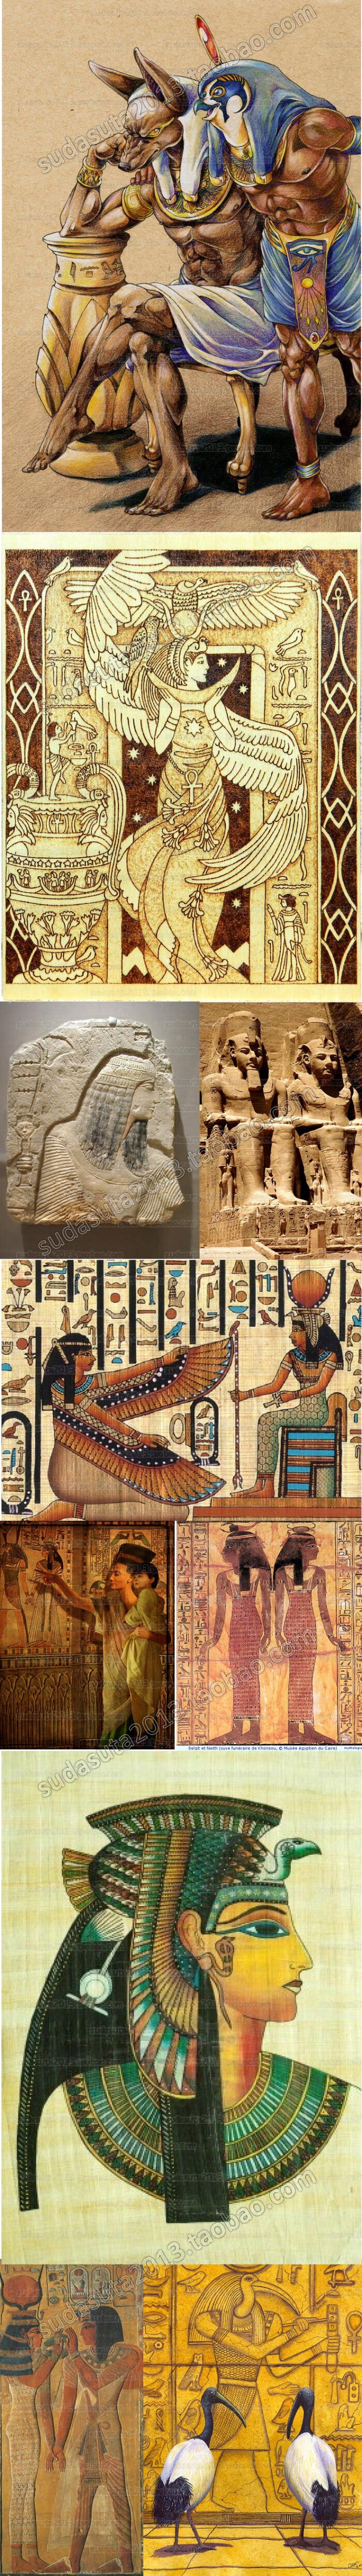 3900张古代埃及神话图片法老文化古文明工艺品壁画尼罗河女王